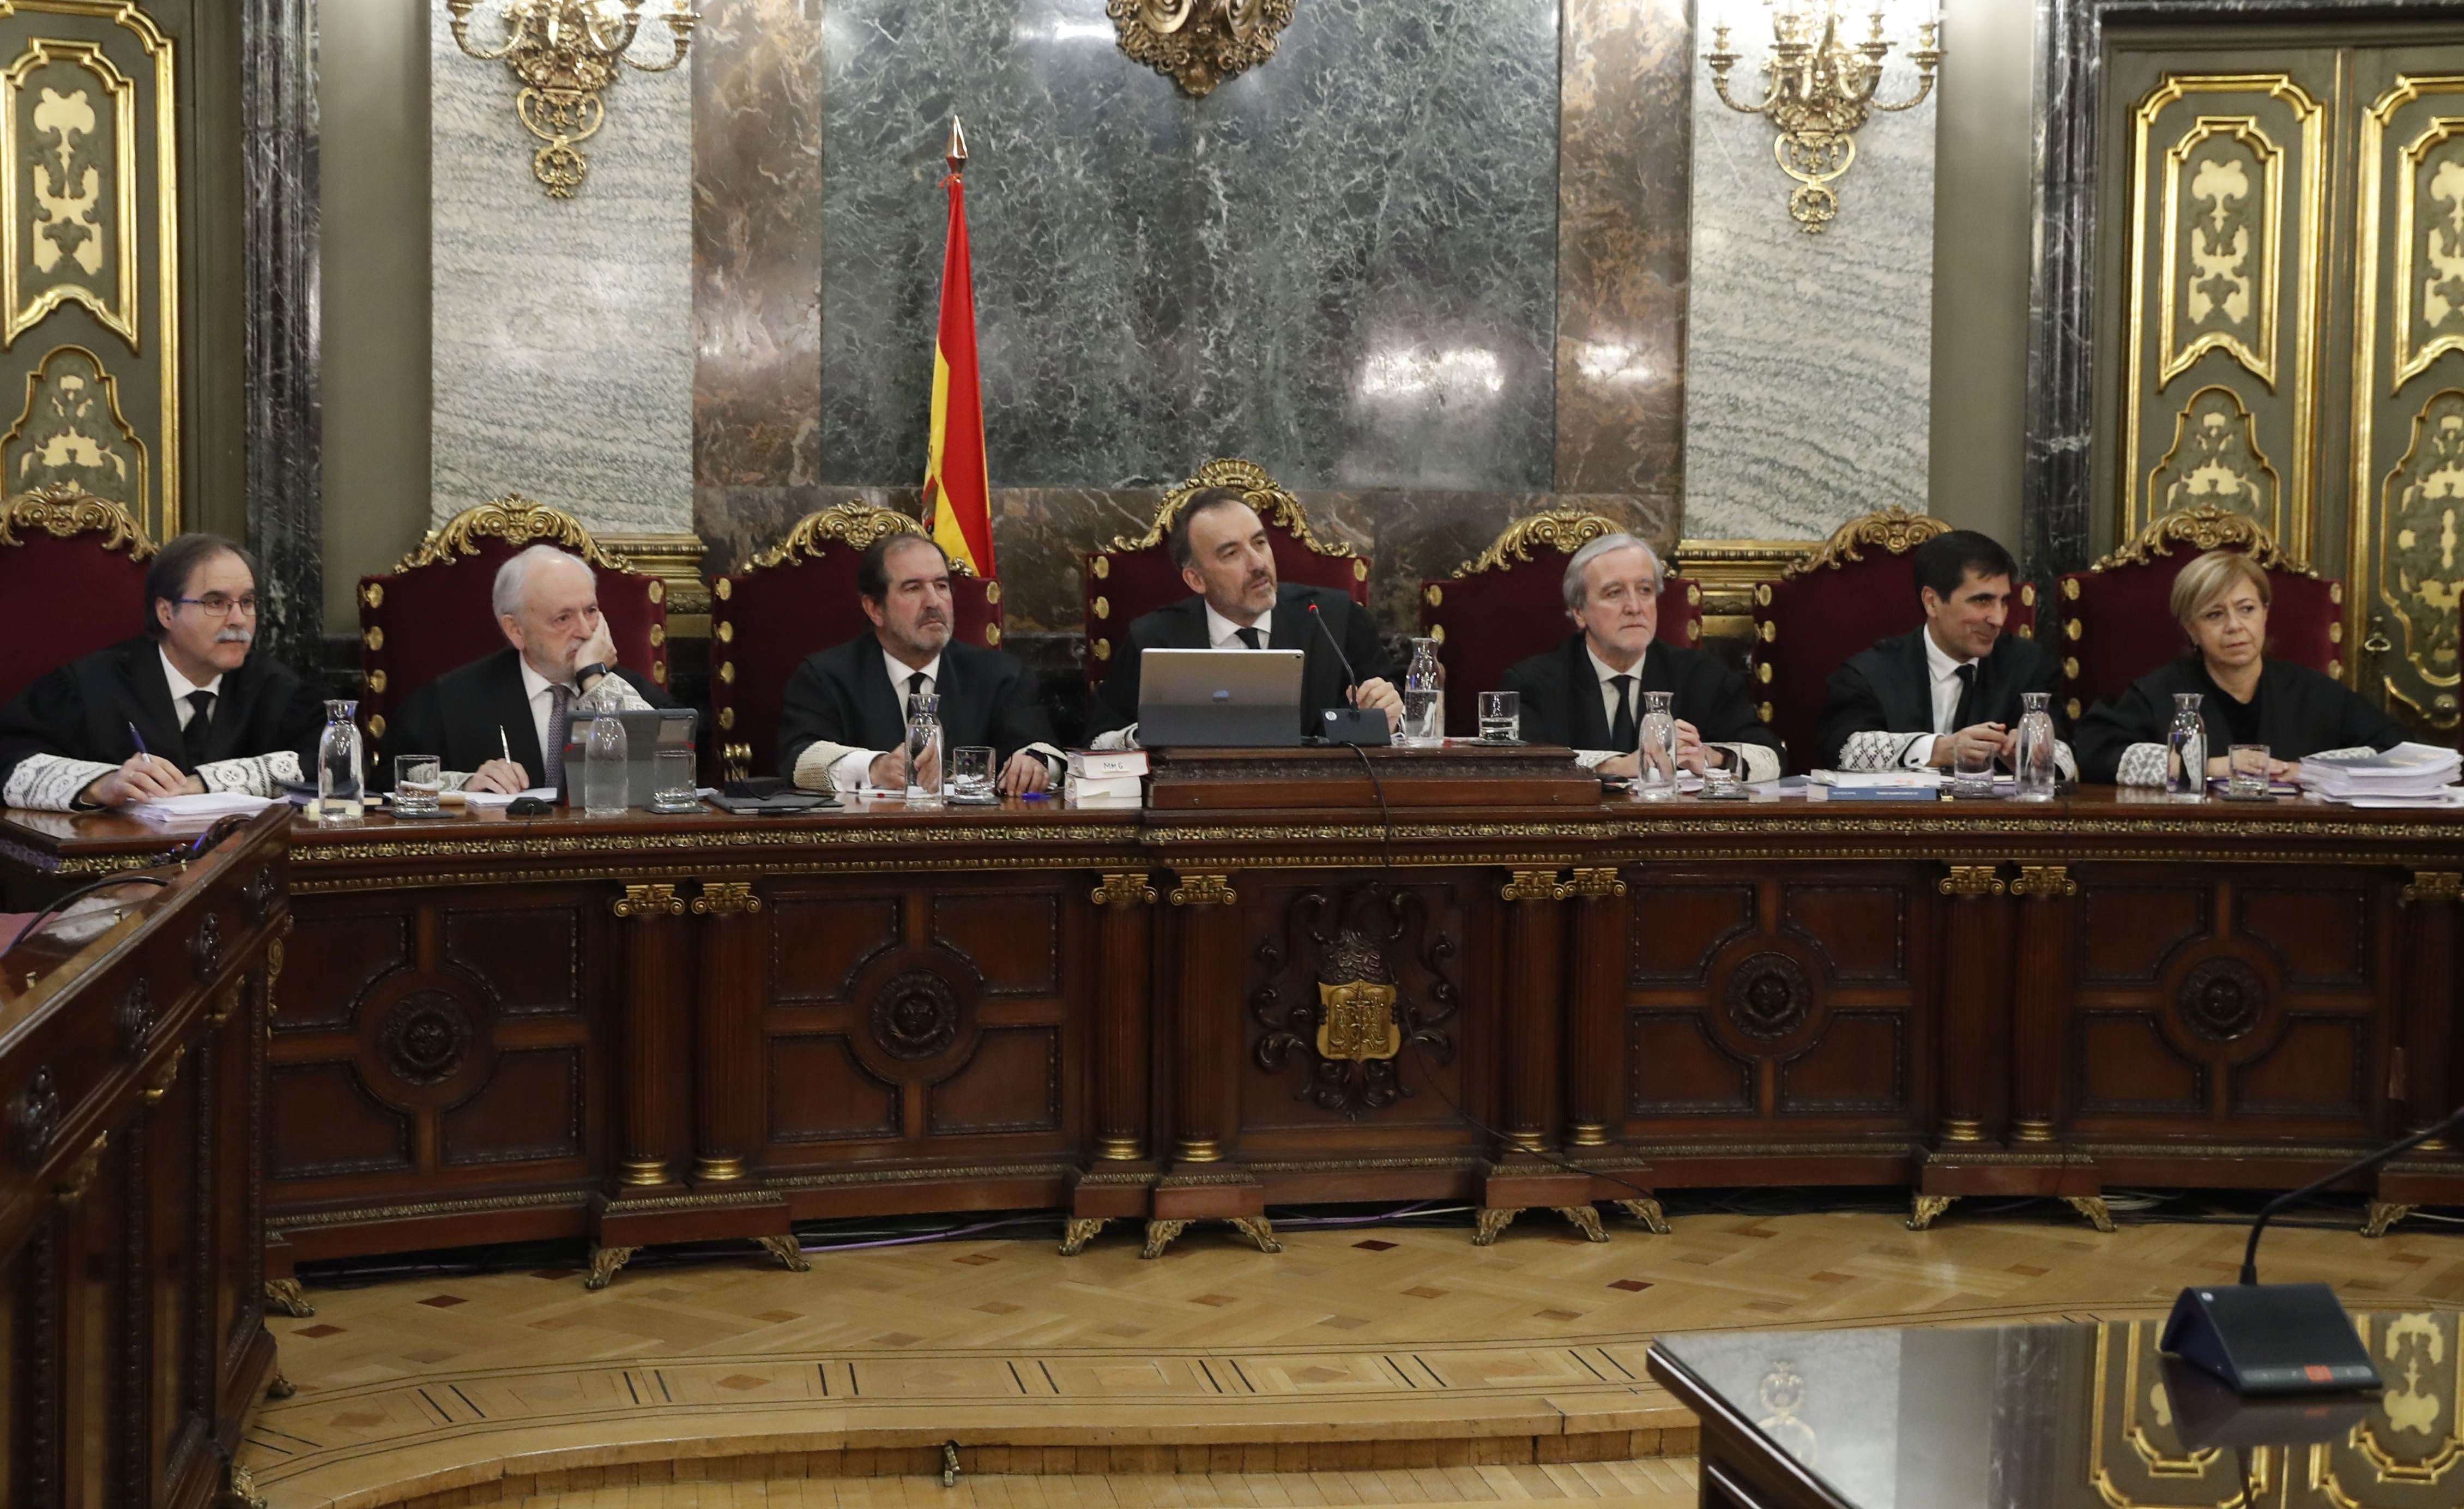 Els sinistres magistrats del Tribunal Suprem espanyol.